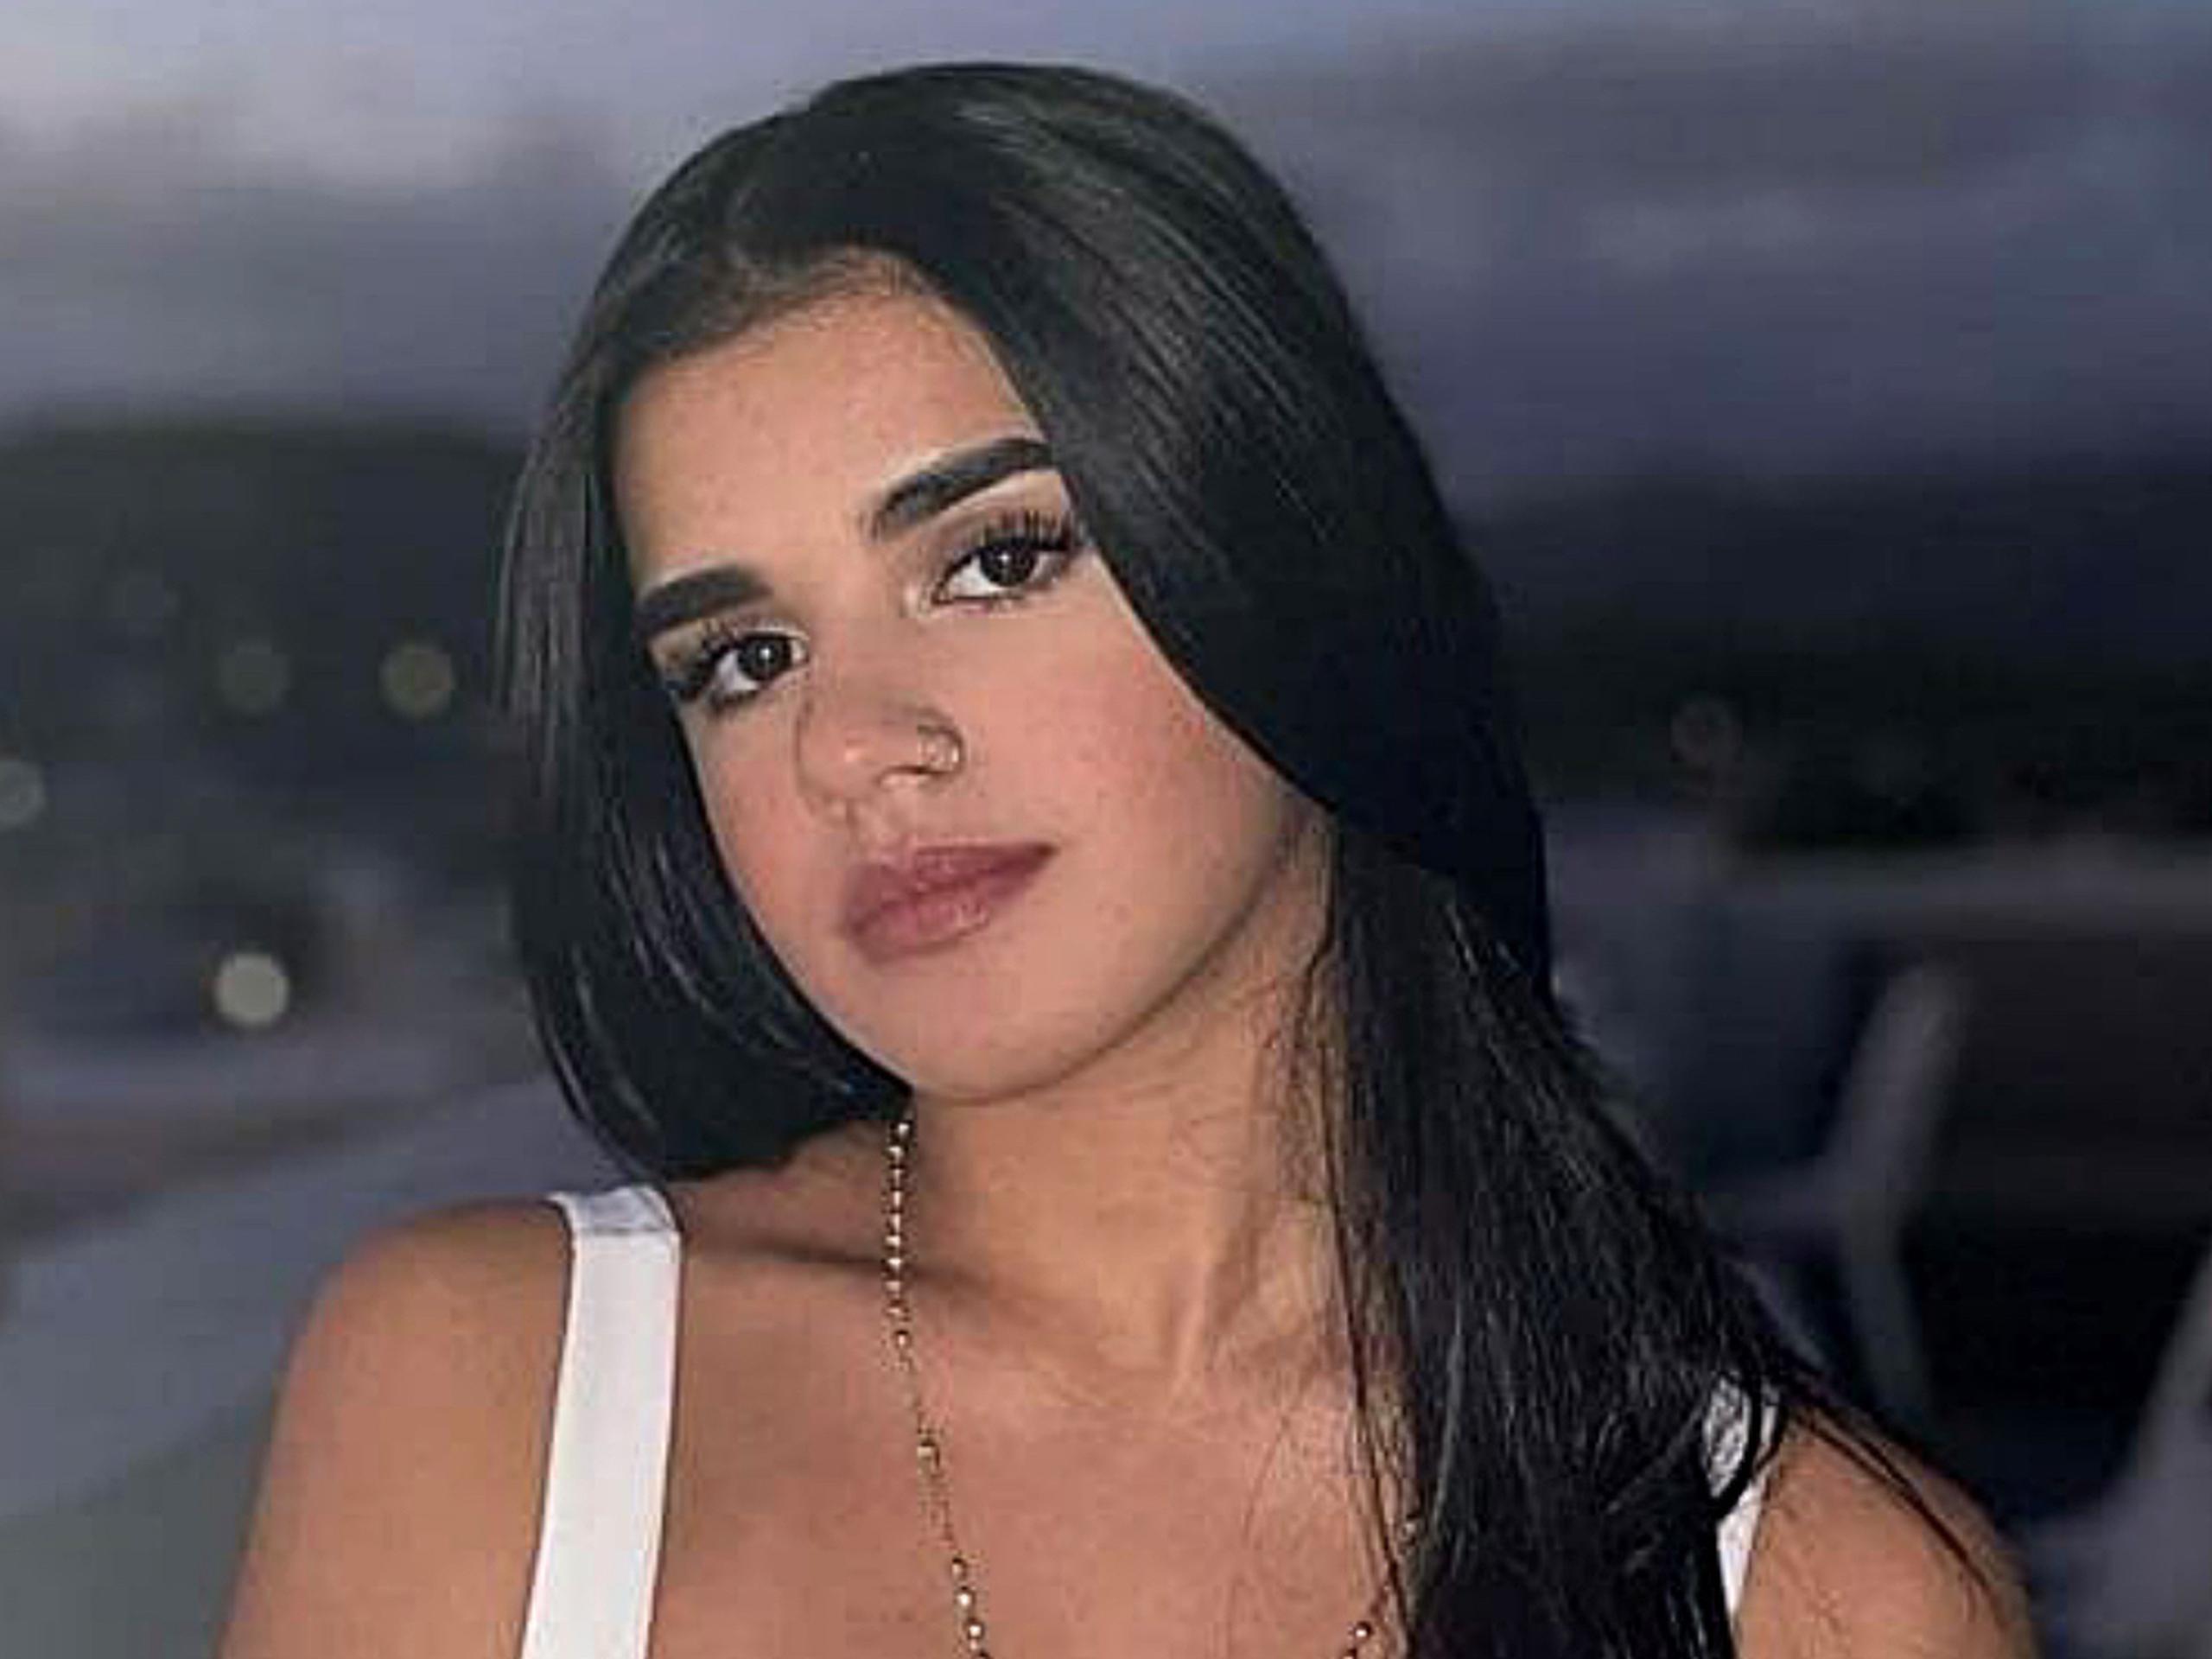 Natalia Nicole Ayala perdió la vida el 5 de enero de 2020 cuando cambiaba un neumático de su vehículo.